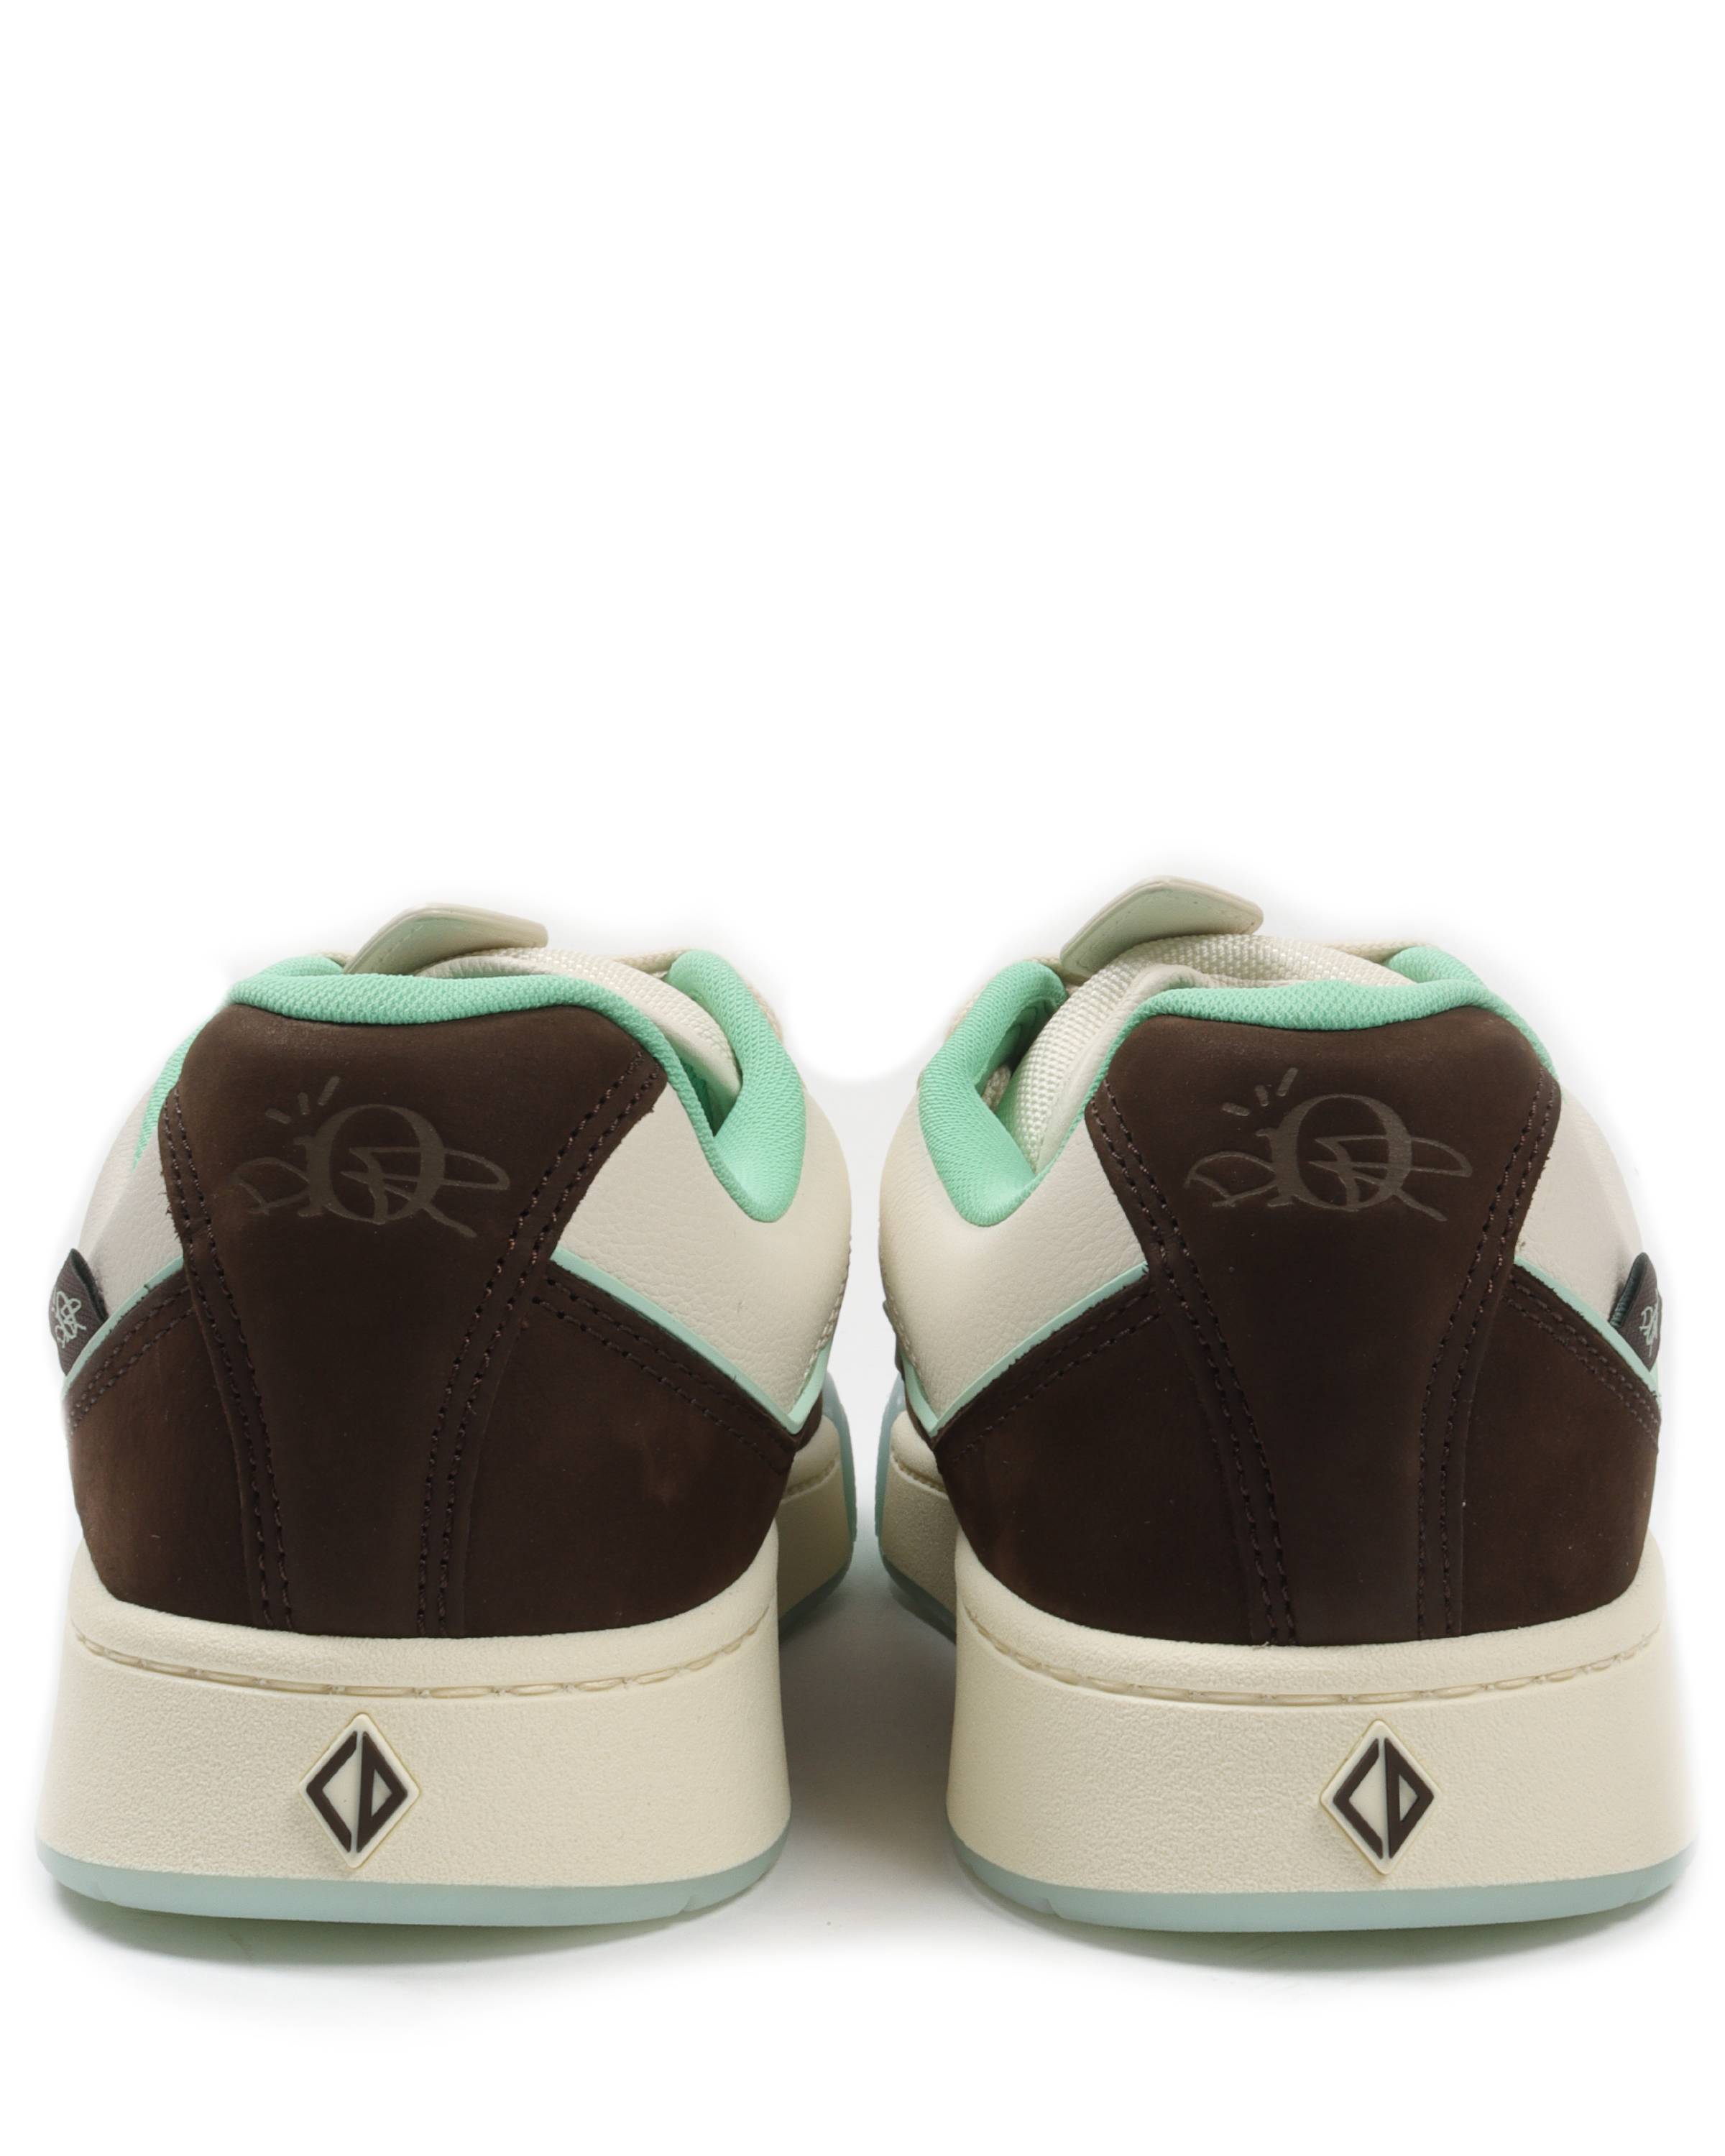 B713 Cactus Jack Dior Sneaker